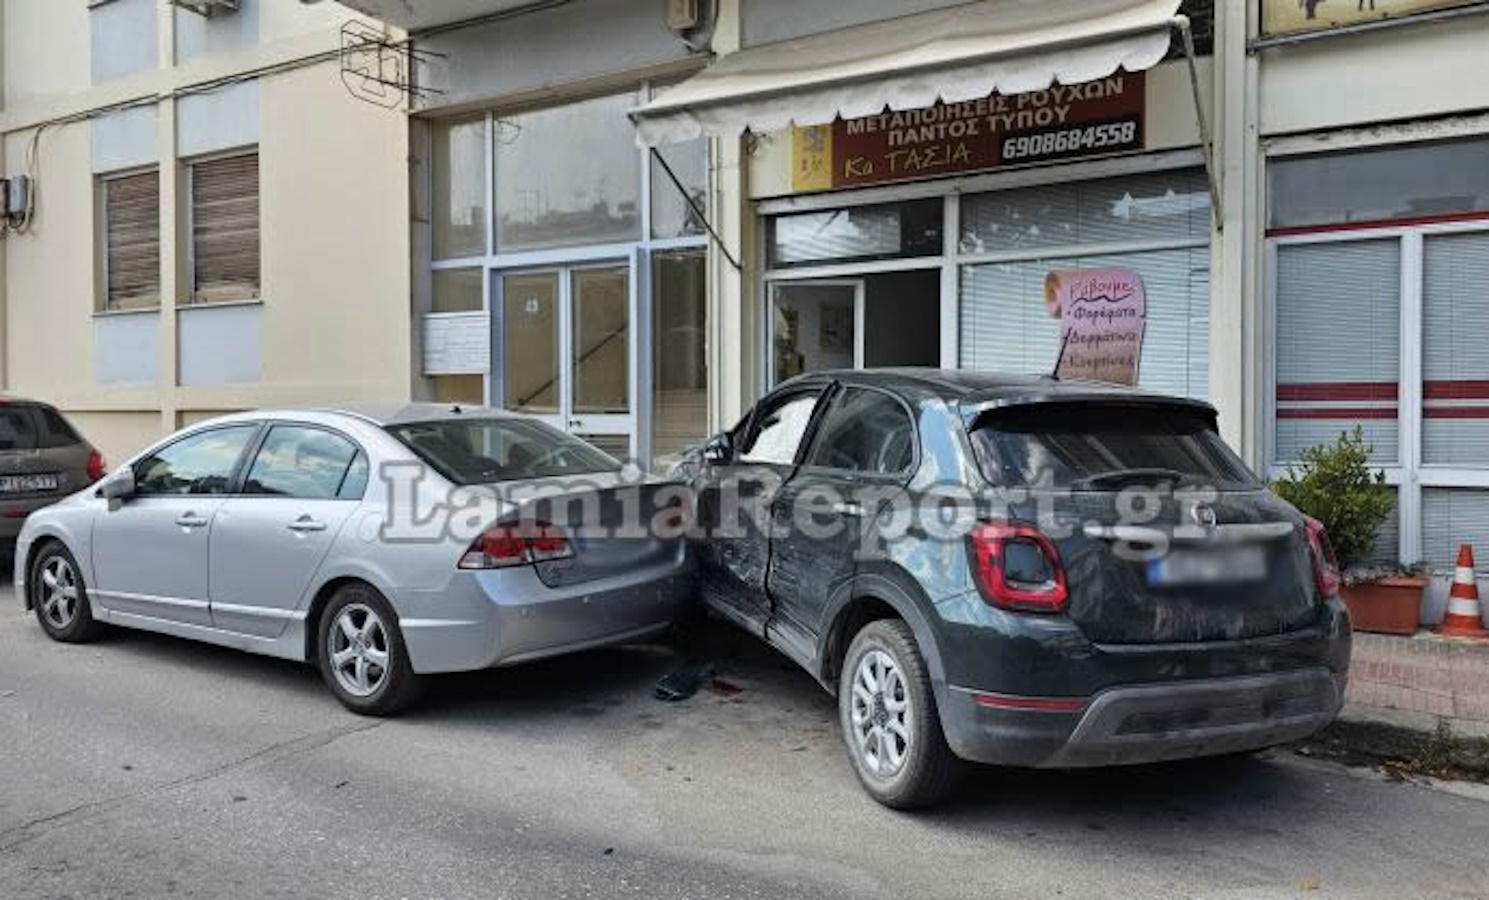 Λαμία: Τροχαίο στο κέντρο της πόλης – Αυτοκίνητο καρφώθηκε σε βιτρίνα